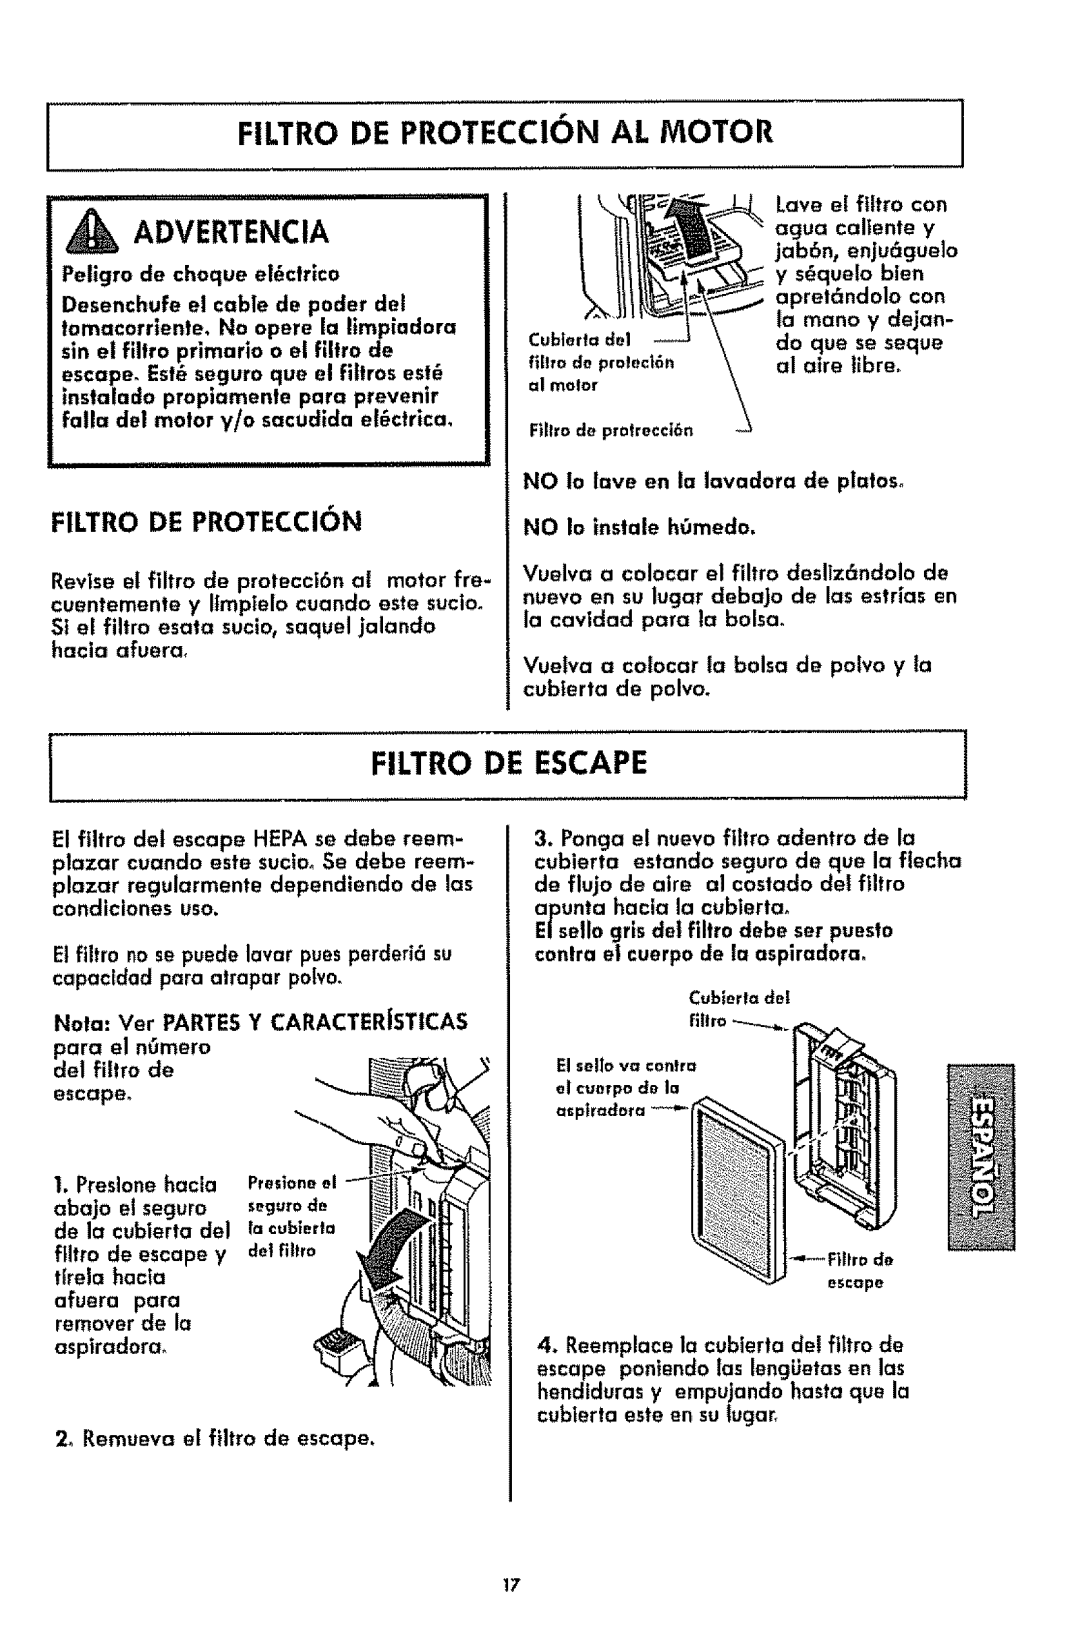 Kenmore 116.3181 manual Filtro De Proteccion Al Motor, _ Advertencia, Filtro De Escape 